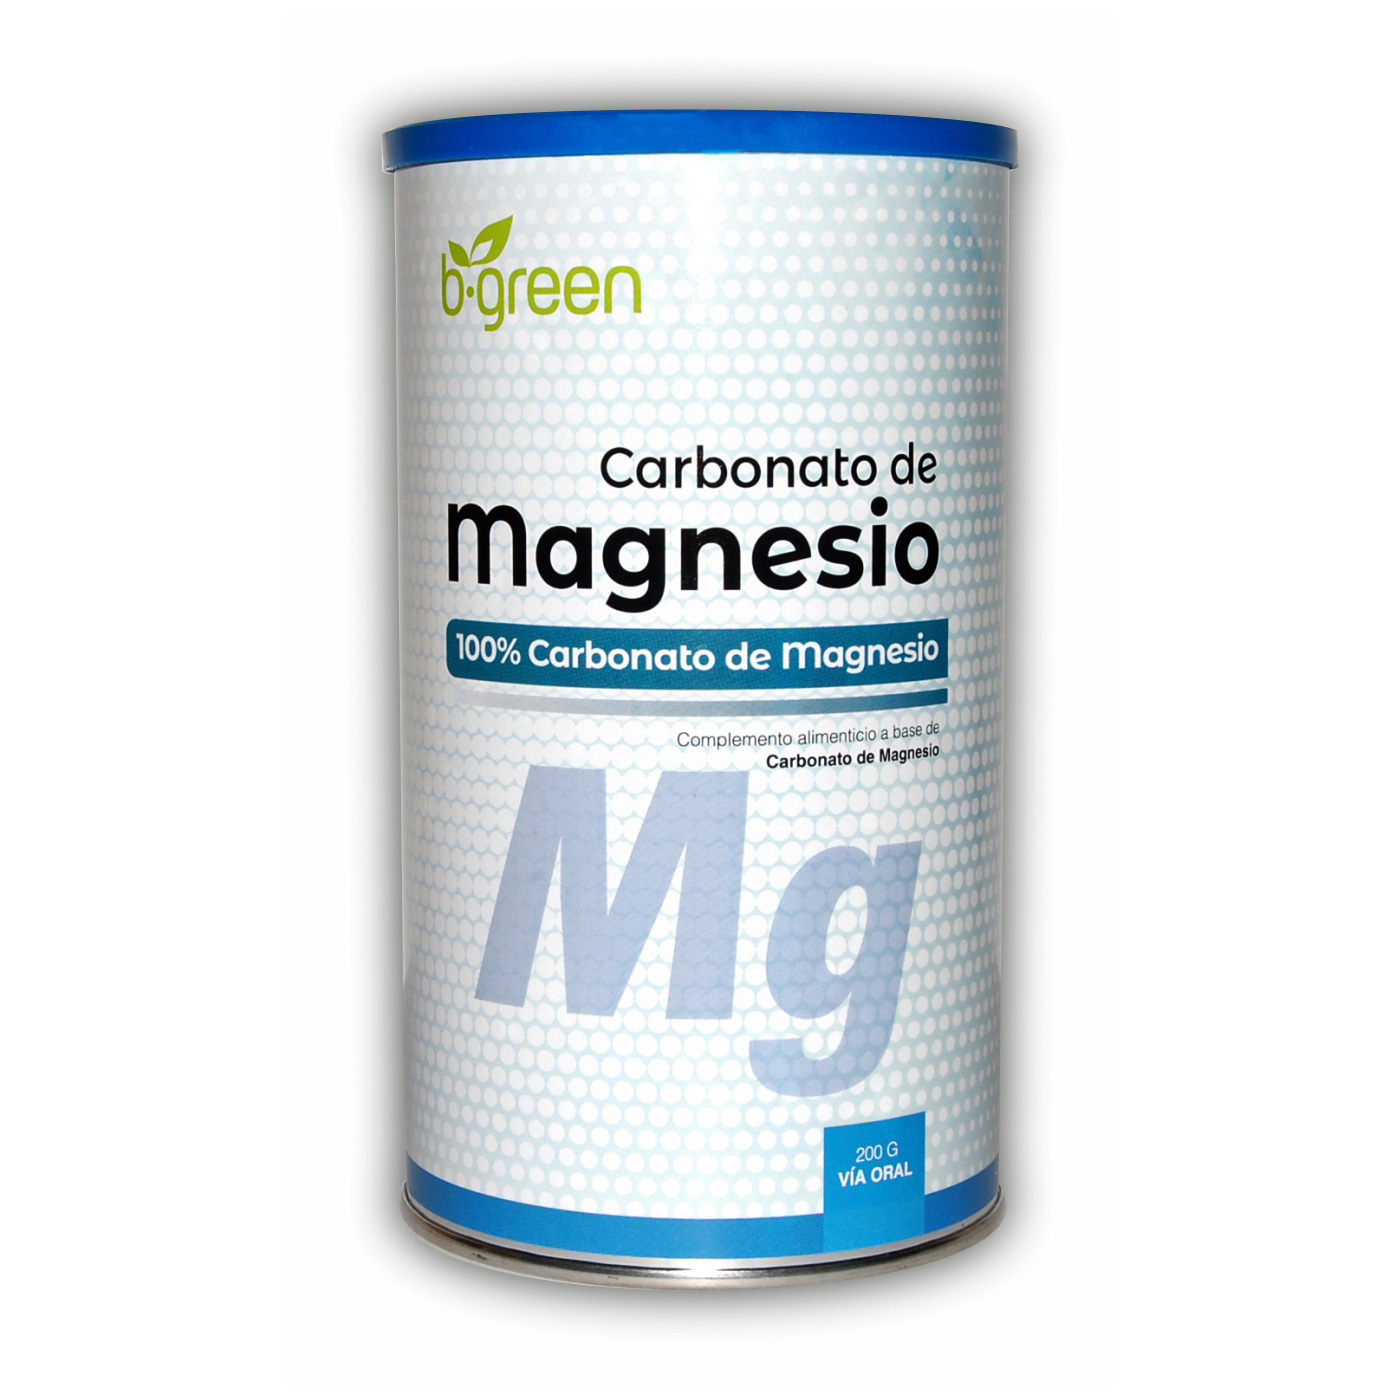 Carbonato de magnesio - Laboratorios Lebudit - Salud, nutrición y cosmética